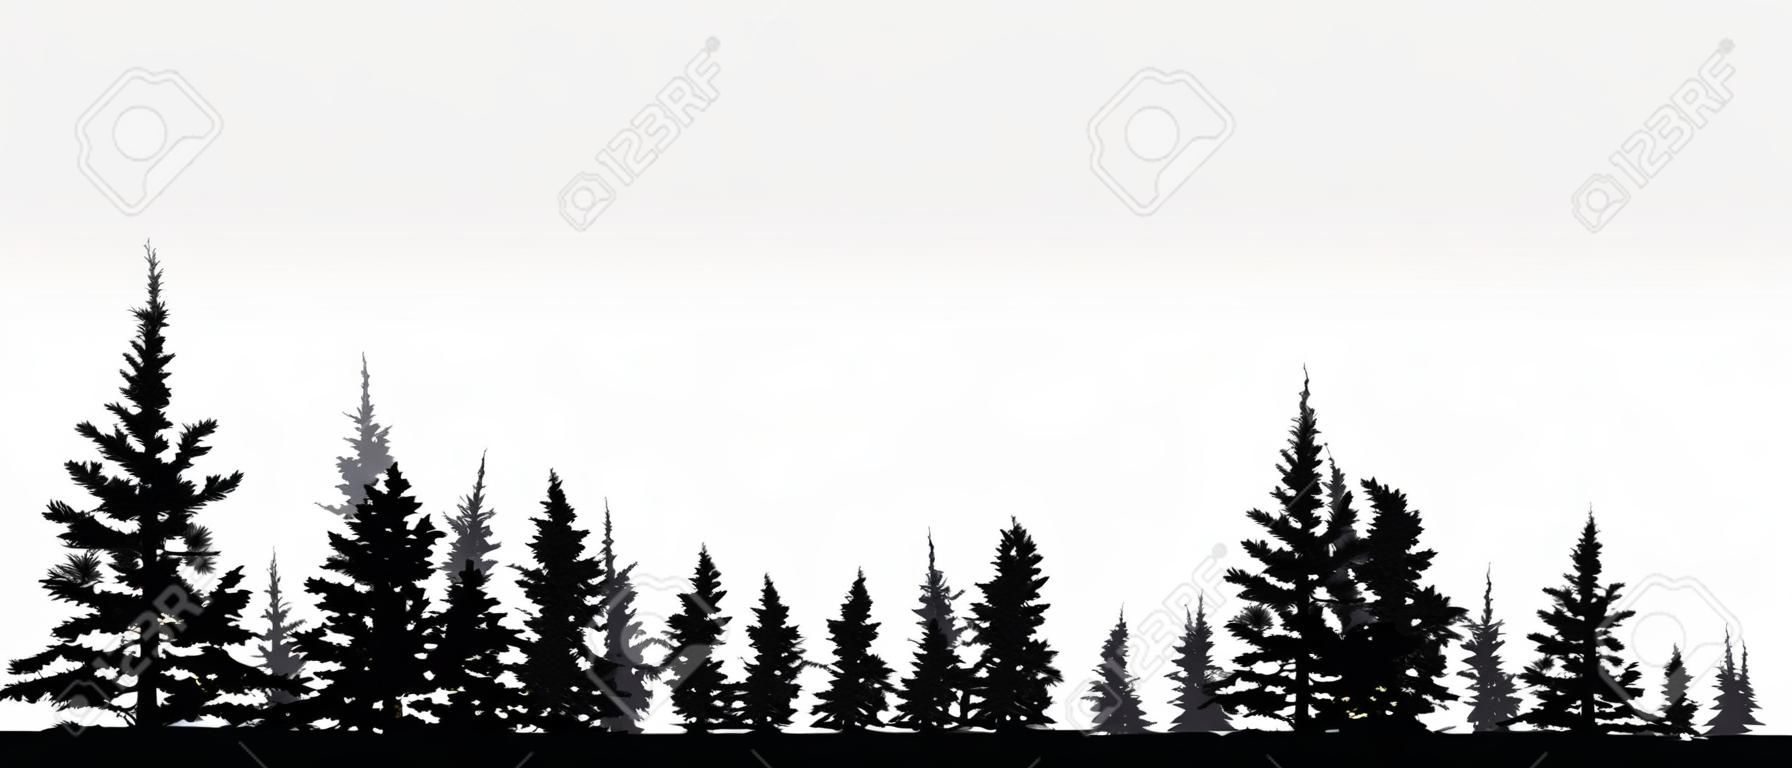 Bosque, árboles coníferos, fondo de vector silueta. Árbol, abeto, árbol de navidad, abeto, pino